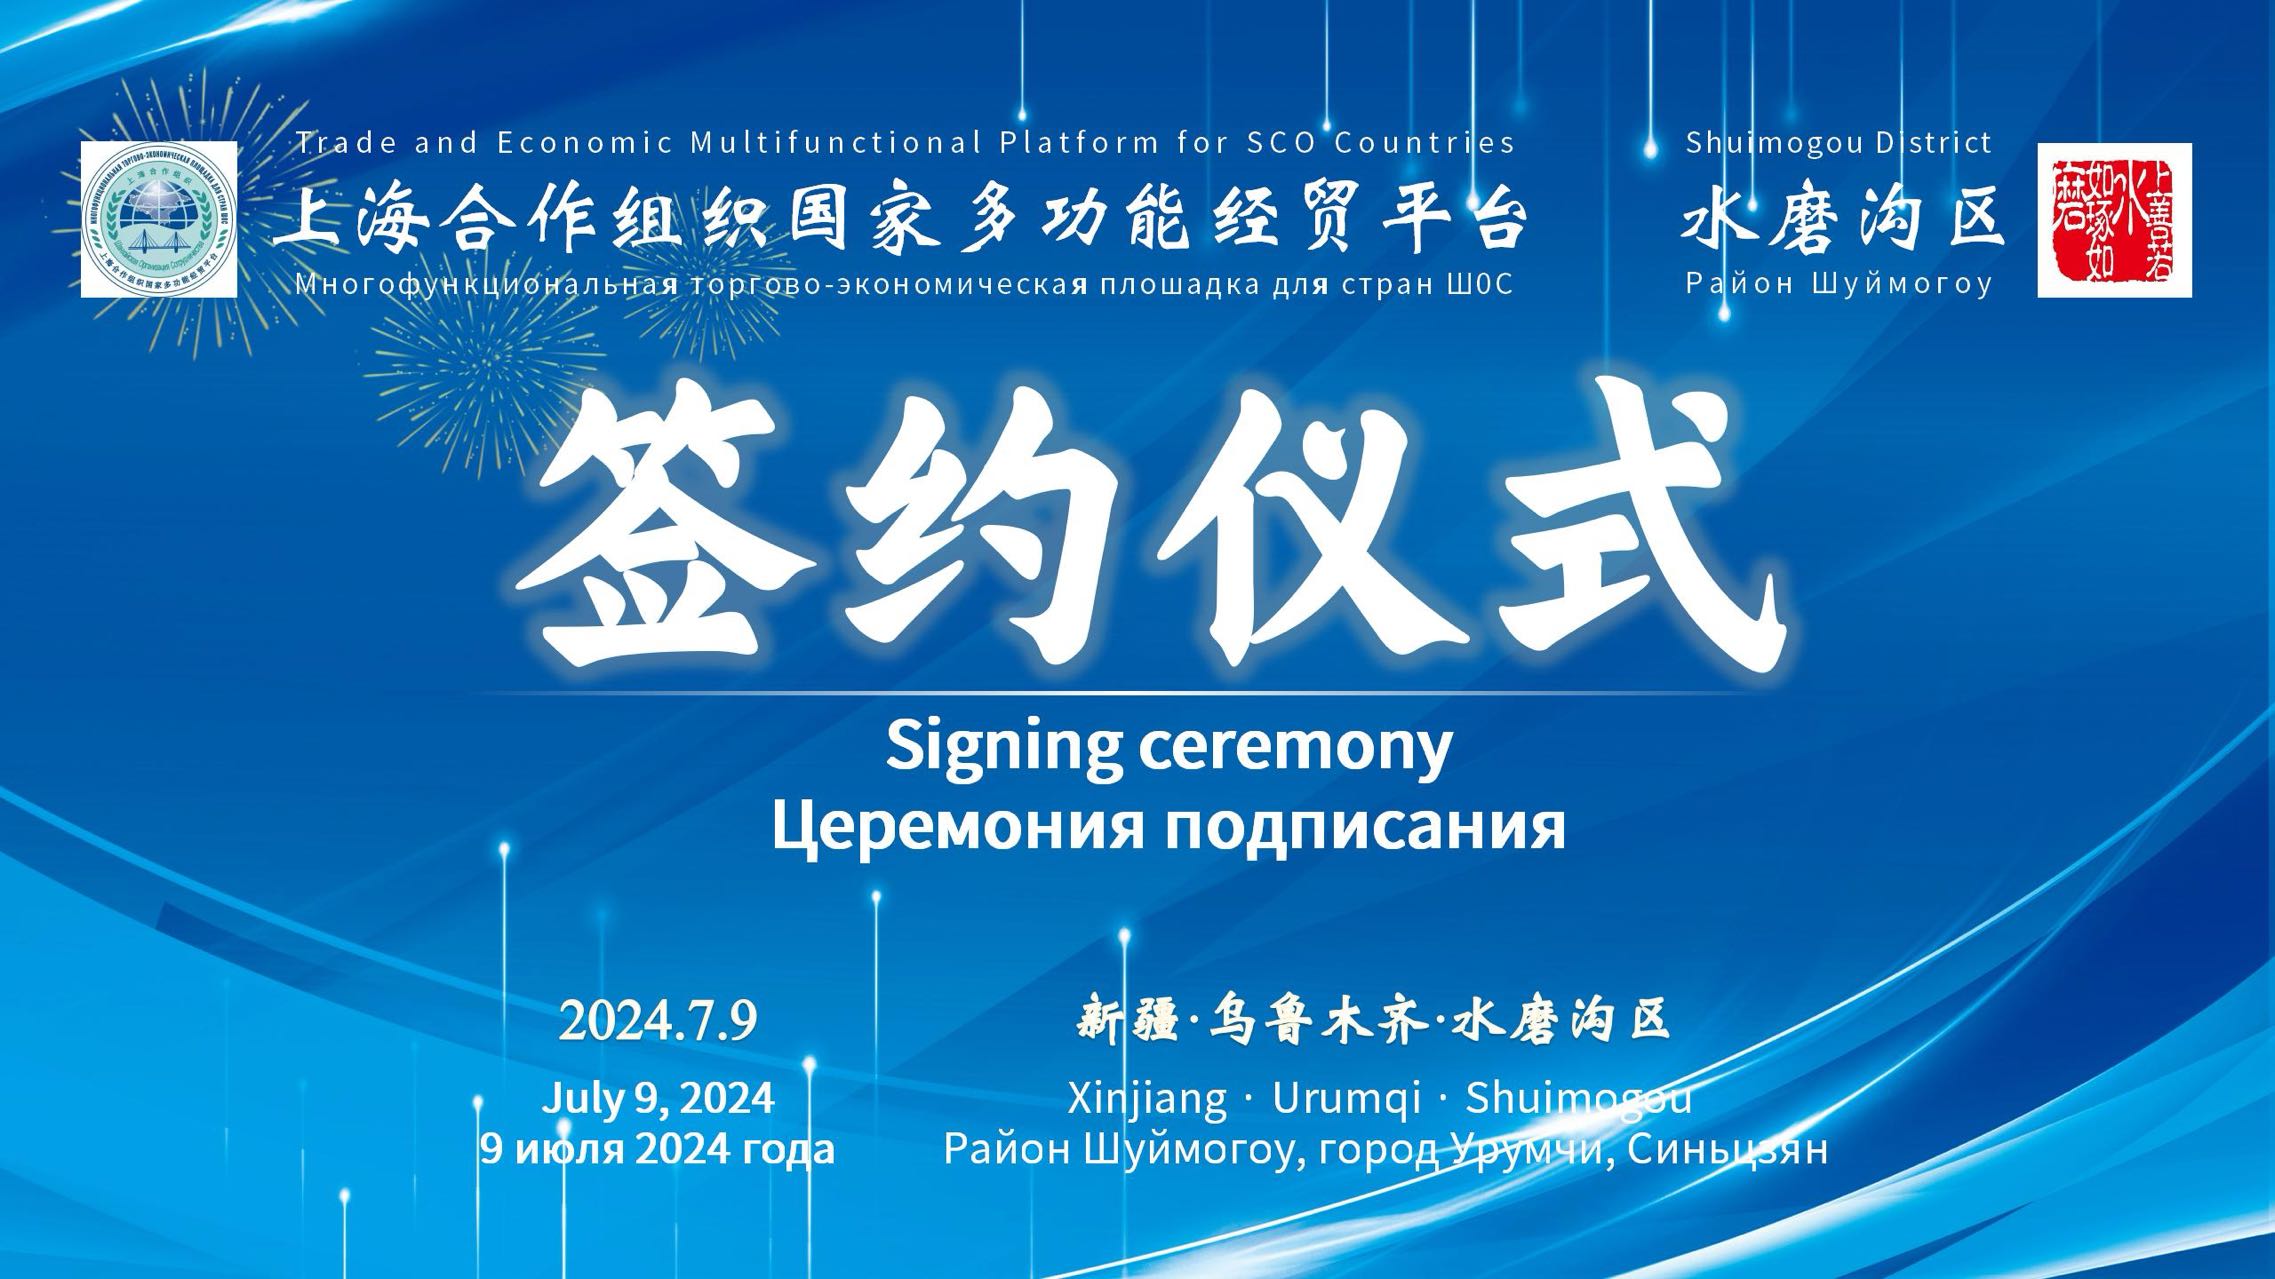 上海合作組織國家多功能經貿平台在烏魯木齊簽署合作備忘錄